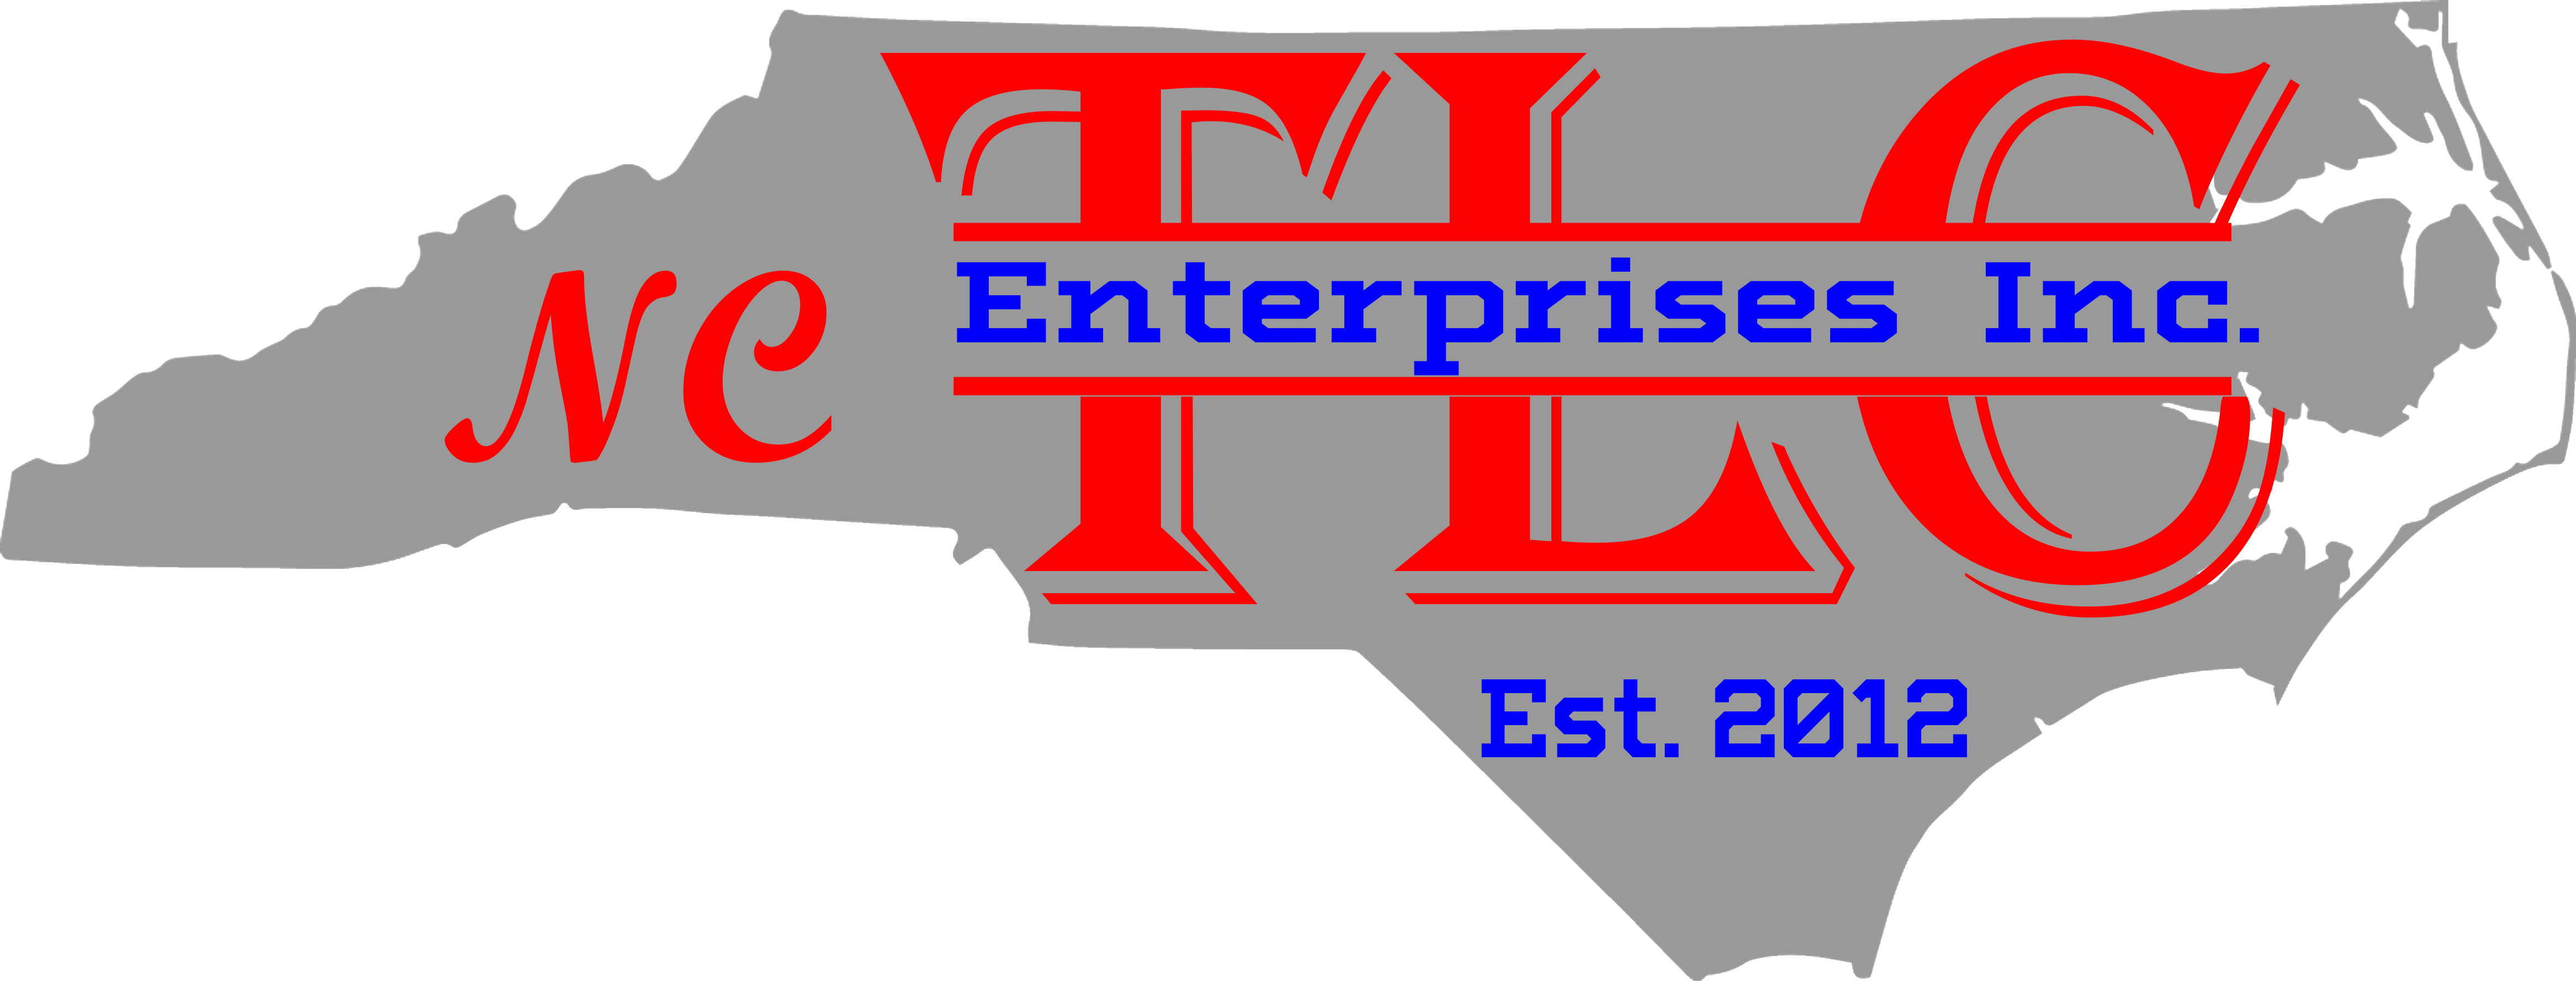 NC TLC Enterprises Inc.